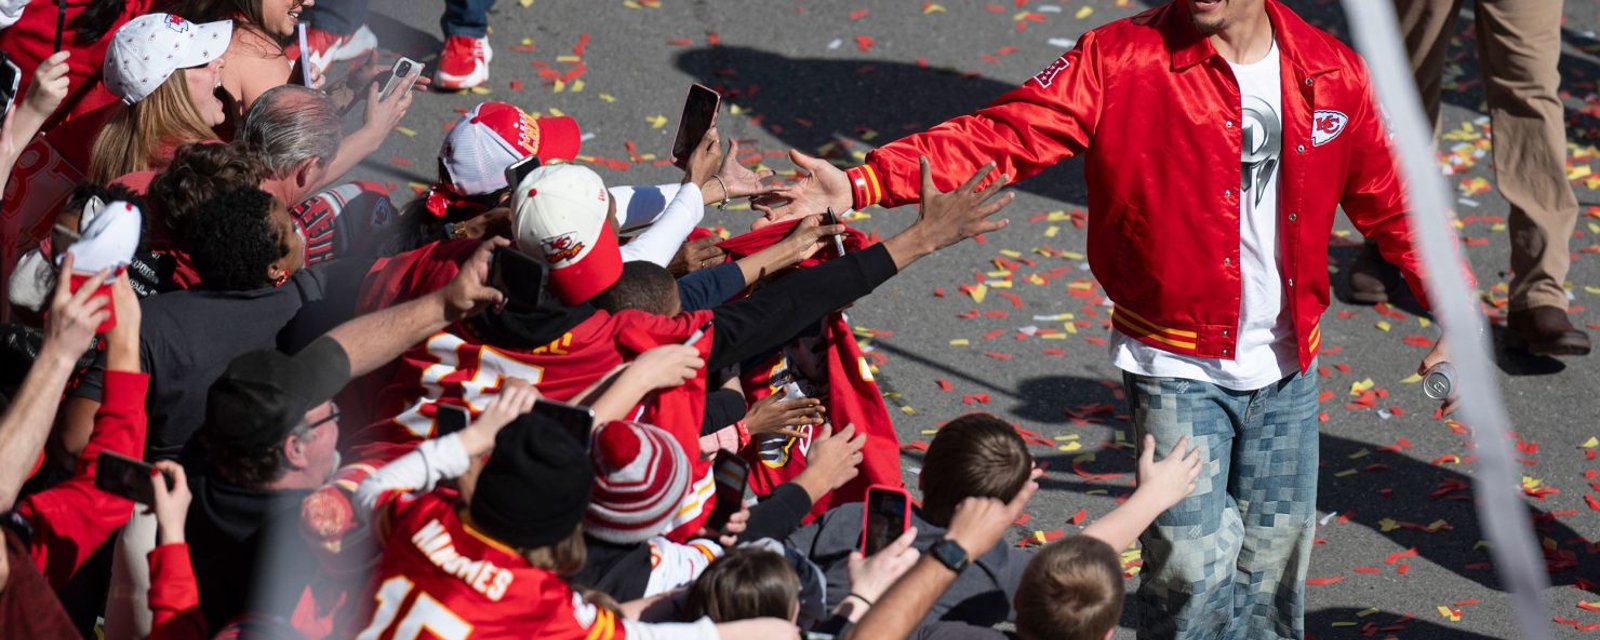 La parade de championnat des Chiefs de Kansas City tourne au cauchemar